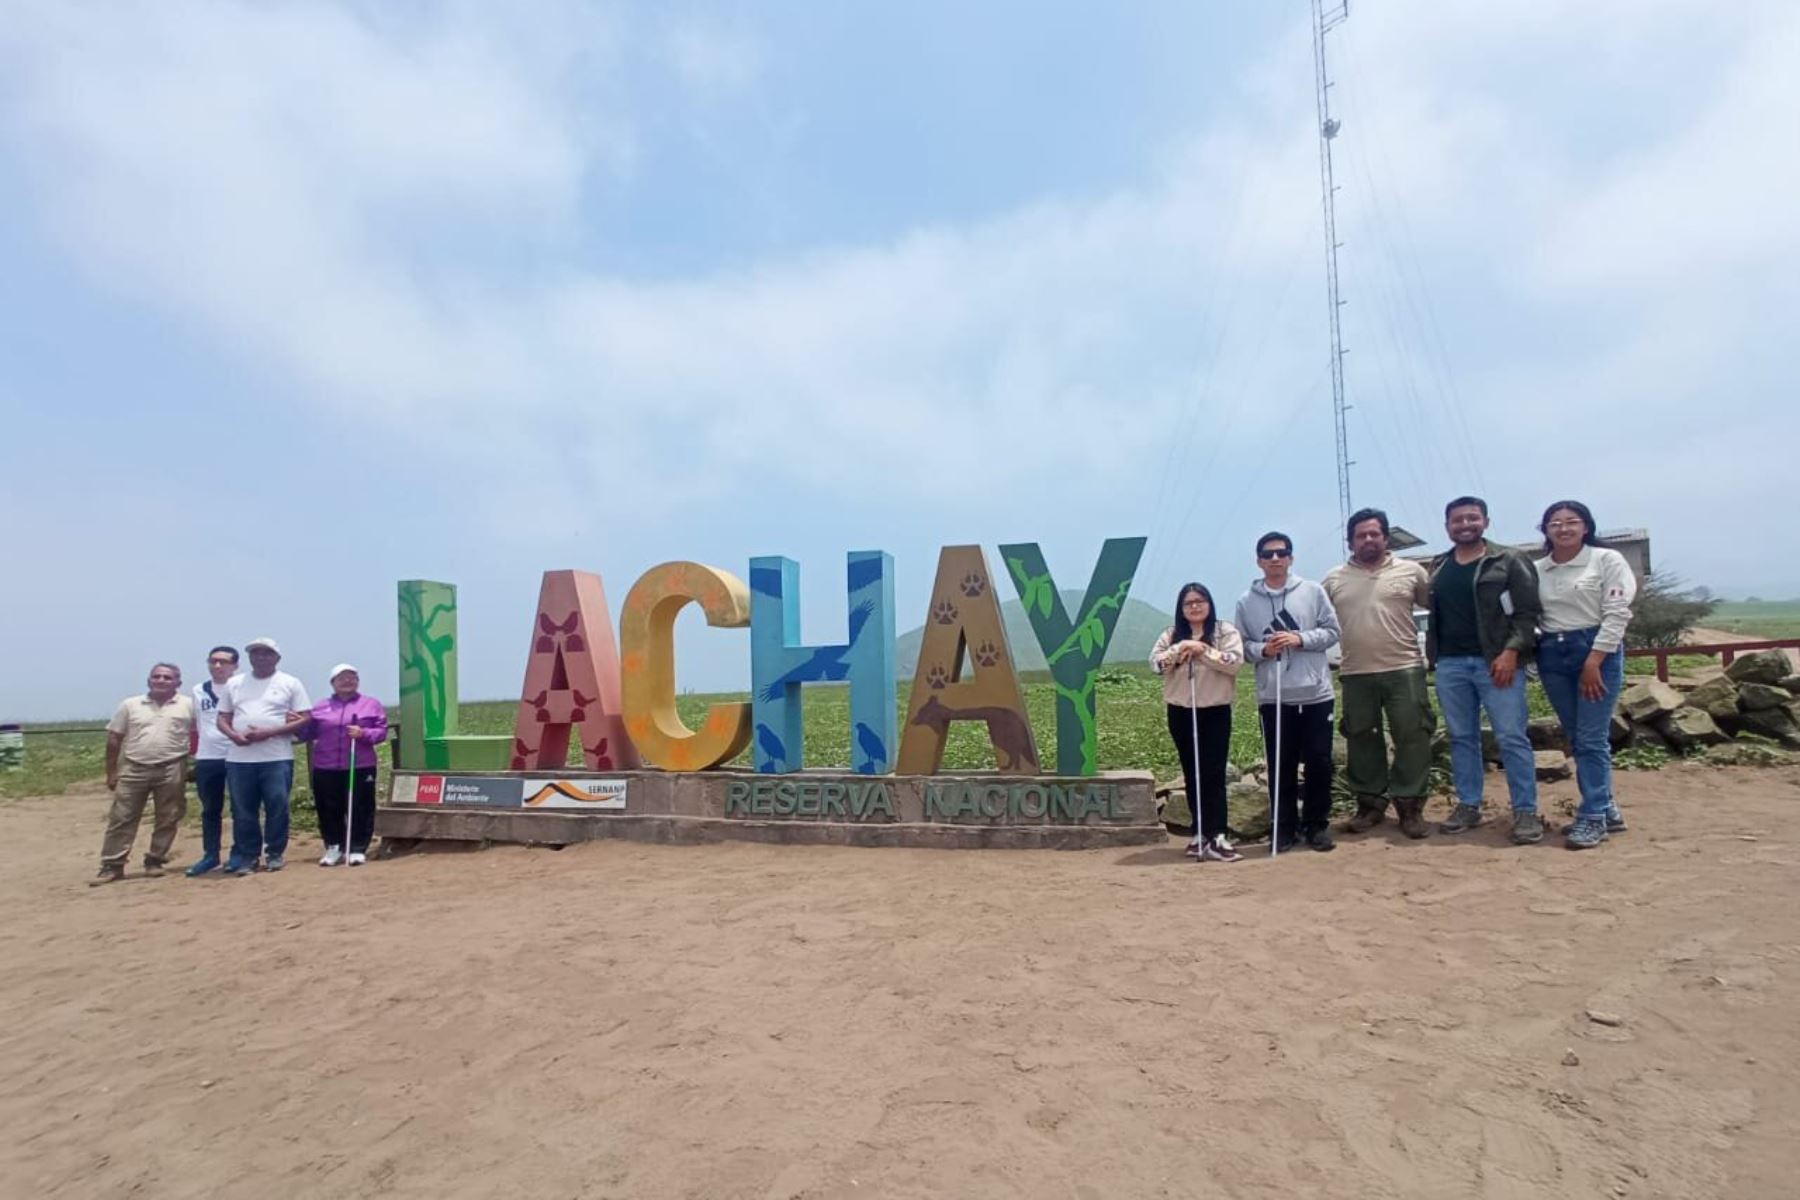 Personas con discapacidad visual recorrieron la reserva nacional de Lachay, en la provincia limeña de Huaura. Foto: ANDINA/Mincetur